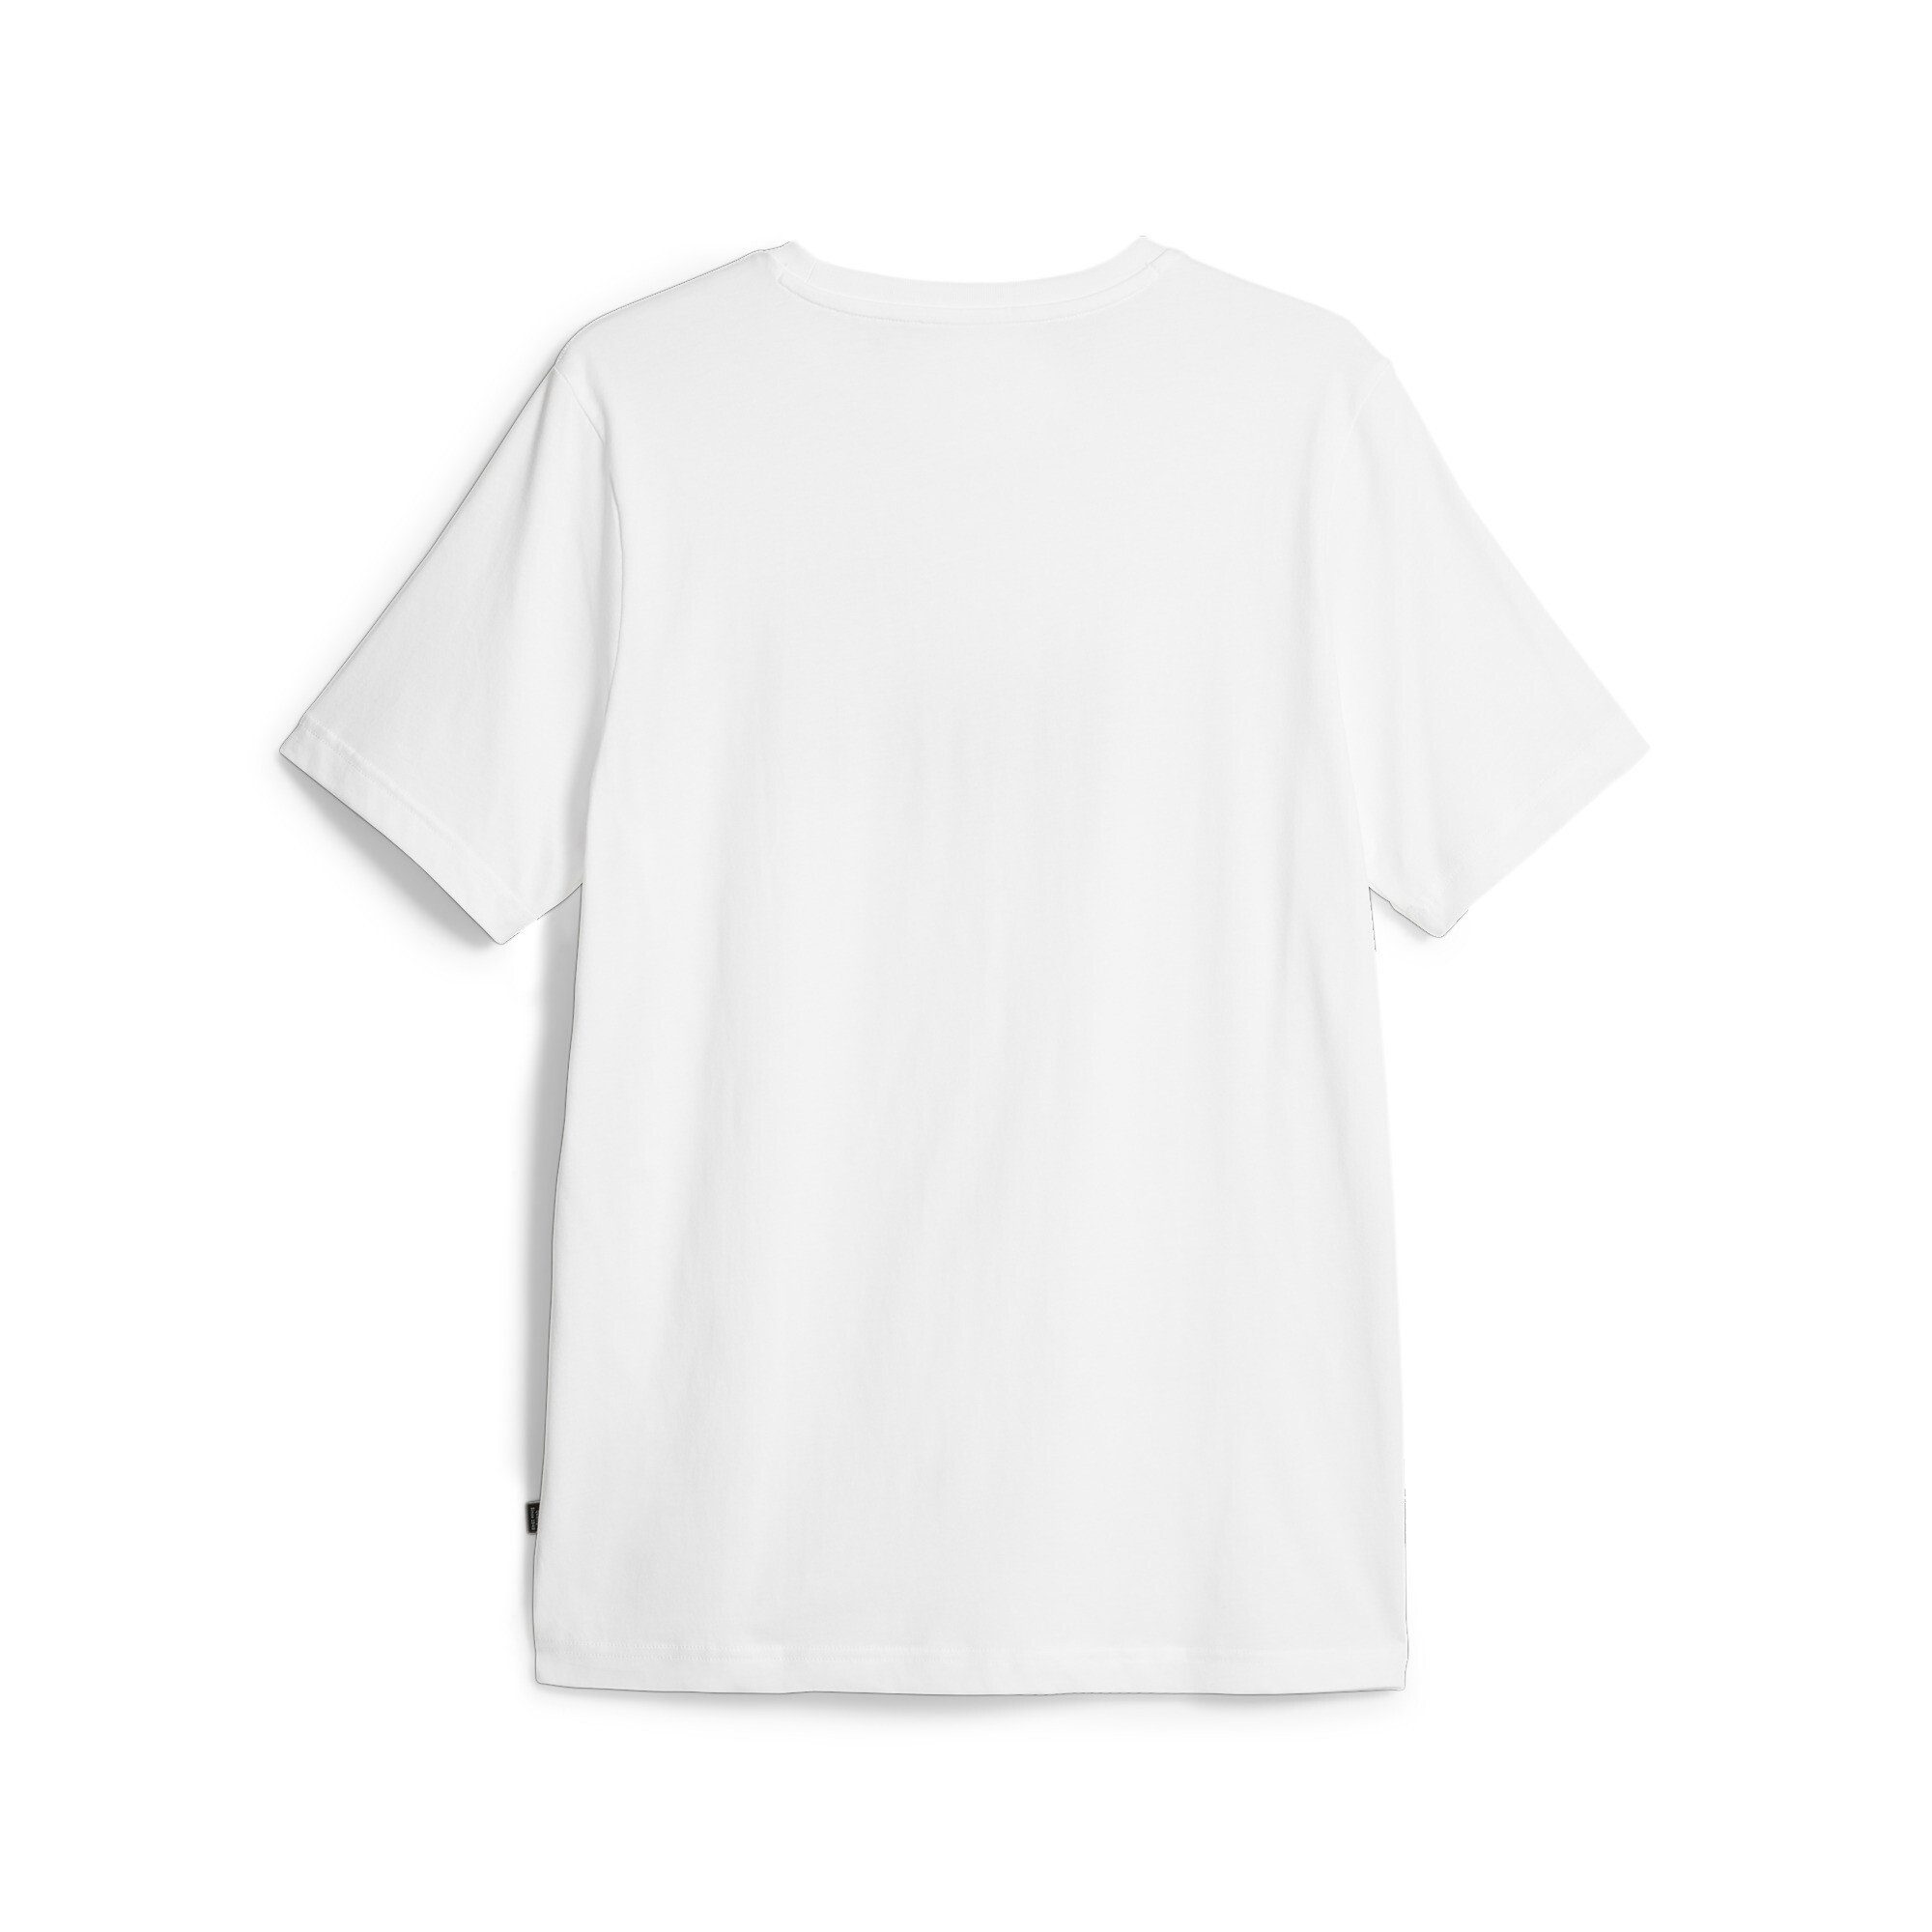 CELEBRATION LOGO TEE PUMA NO. 1 PUMA White T-Shirt